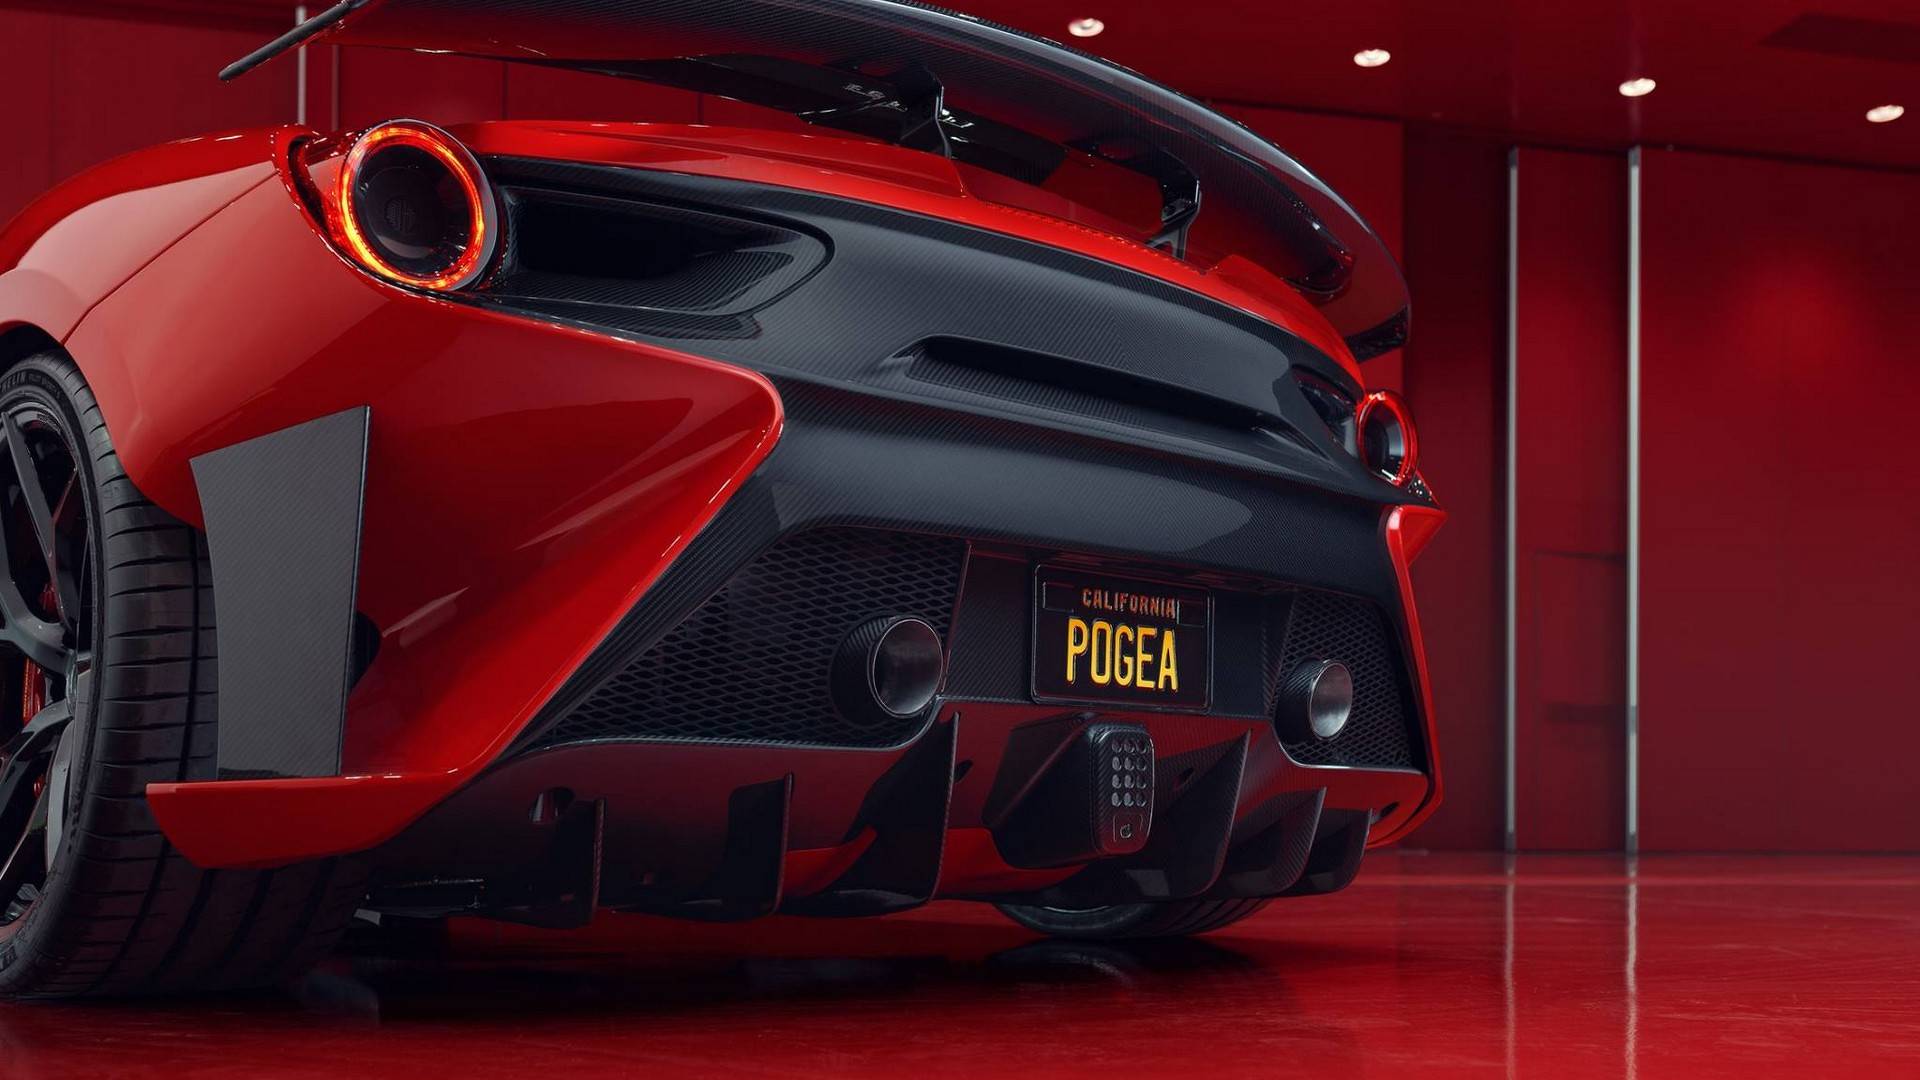 Pogea Ferrari 488 FPlus Corsa